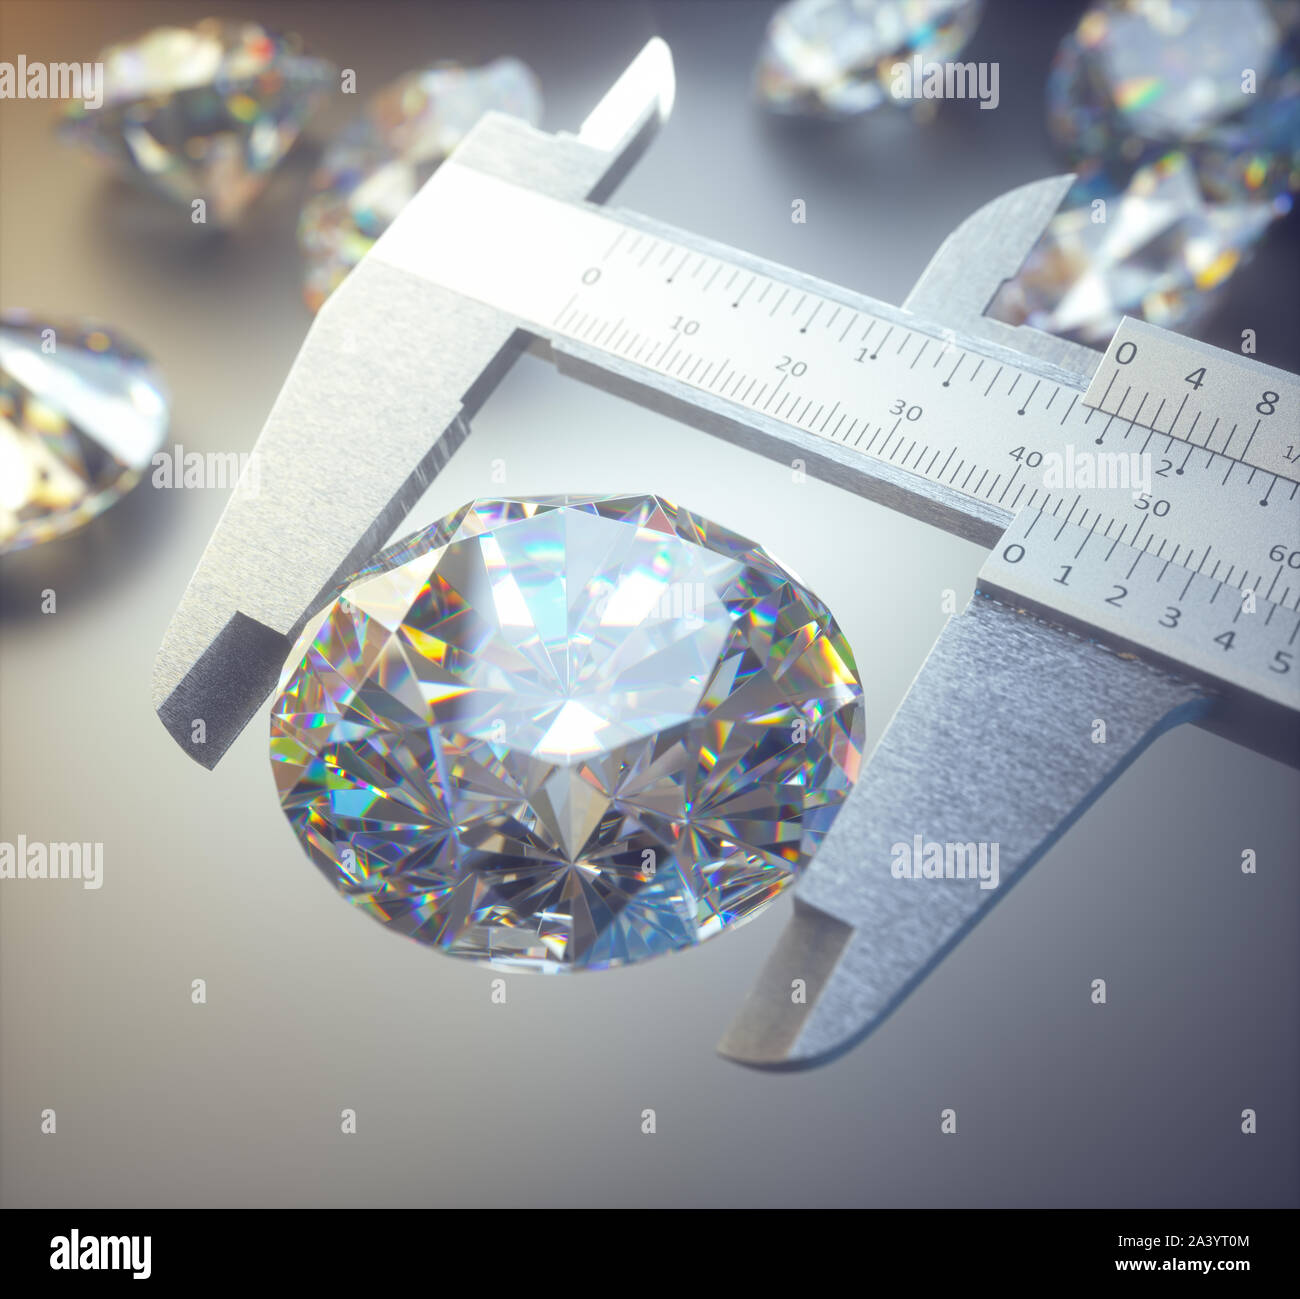 Ilustración 3D de un enorme diamante medido por una mordaza. Concepto de imagen de riqueza y lujo. Foto de stock